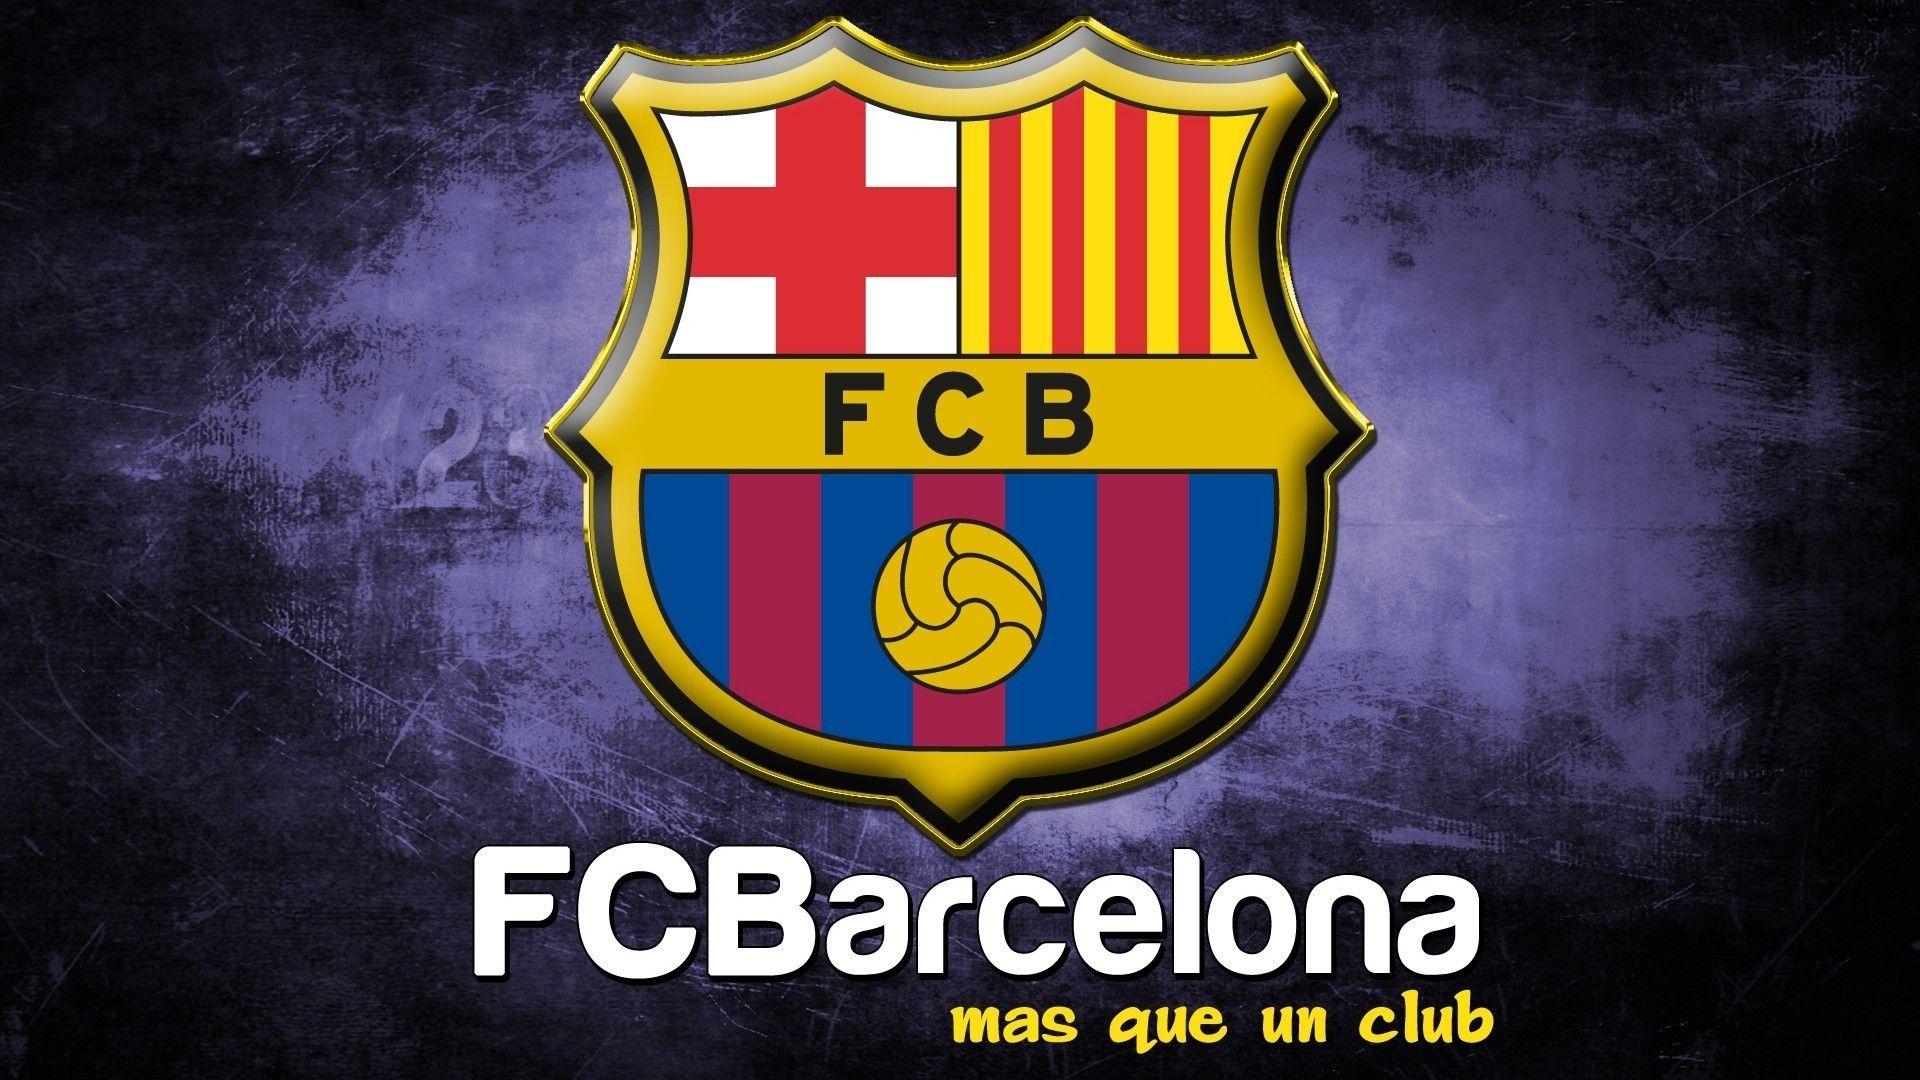 Barcelona Logo Wallpaper. Wallpaper, Background, Image, Art